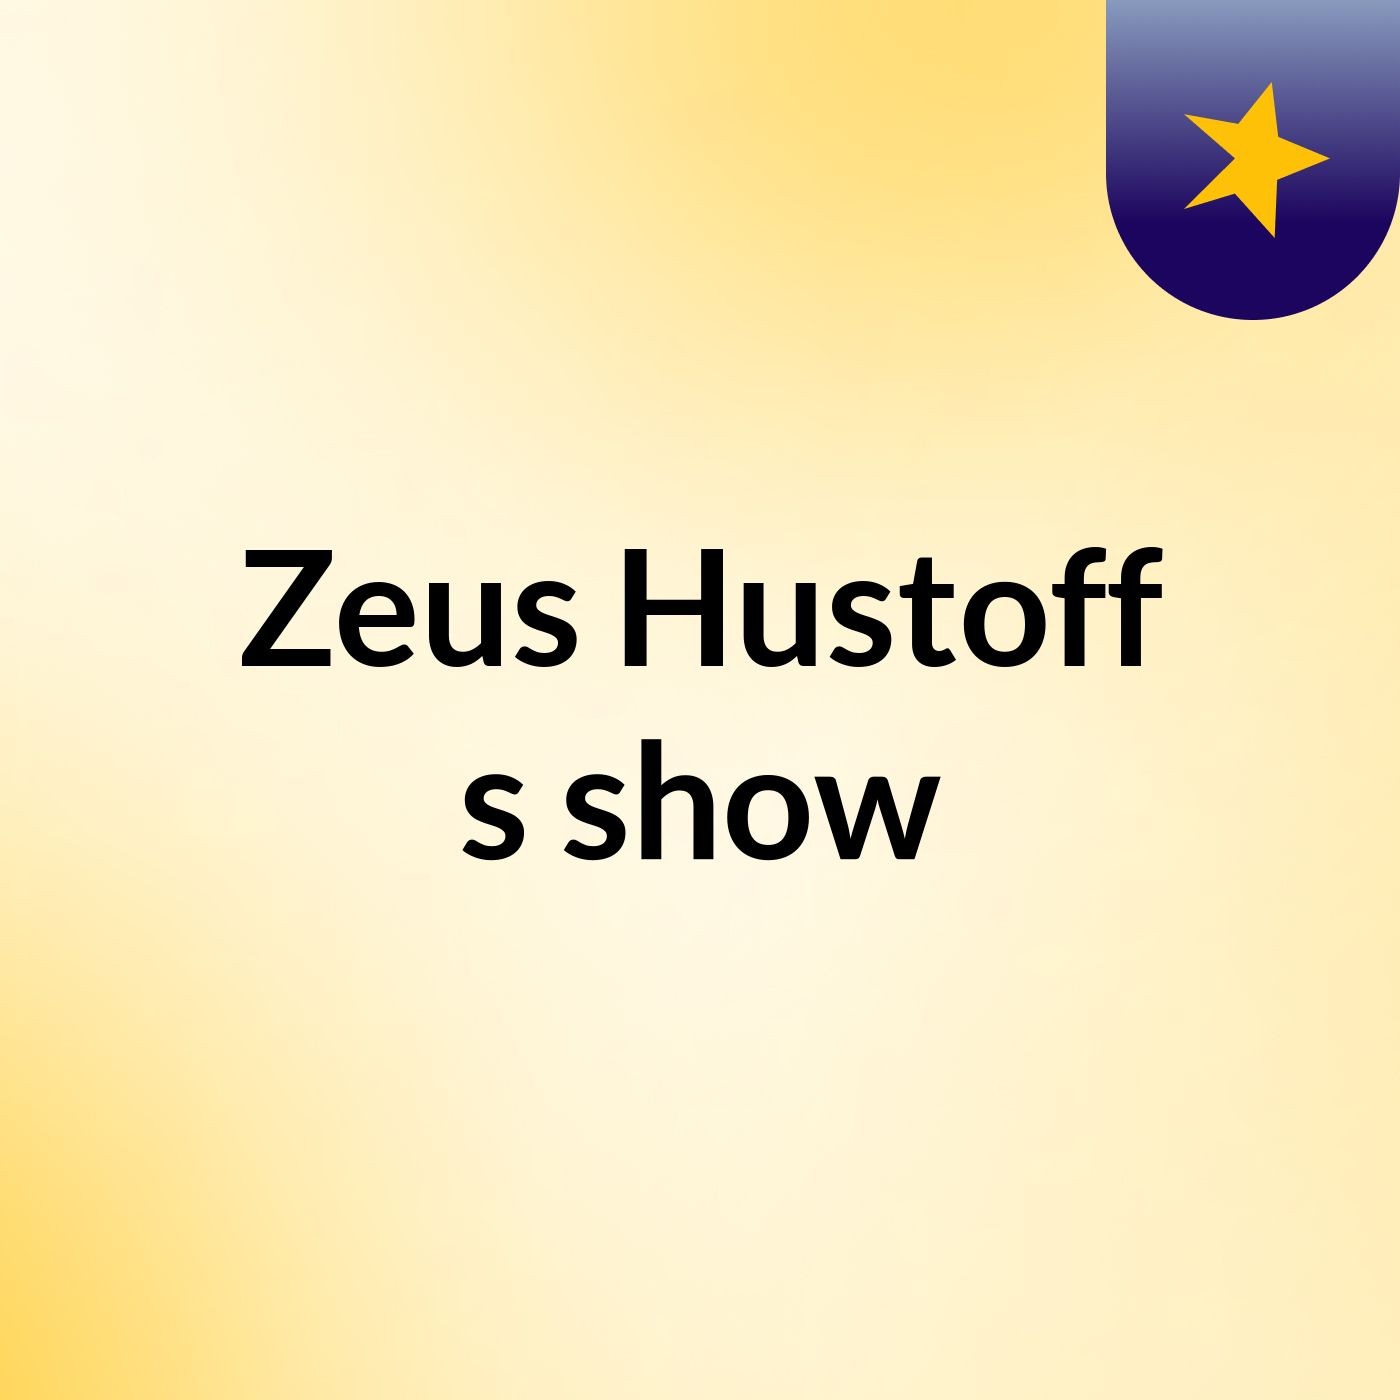 Zeus Hustoff's show